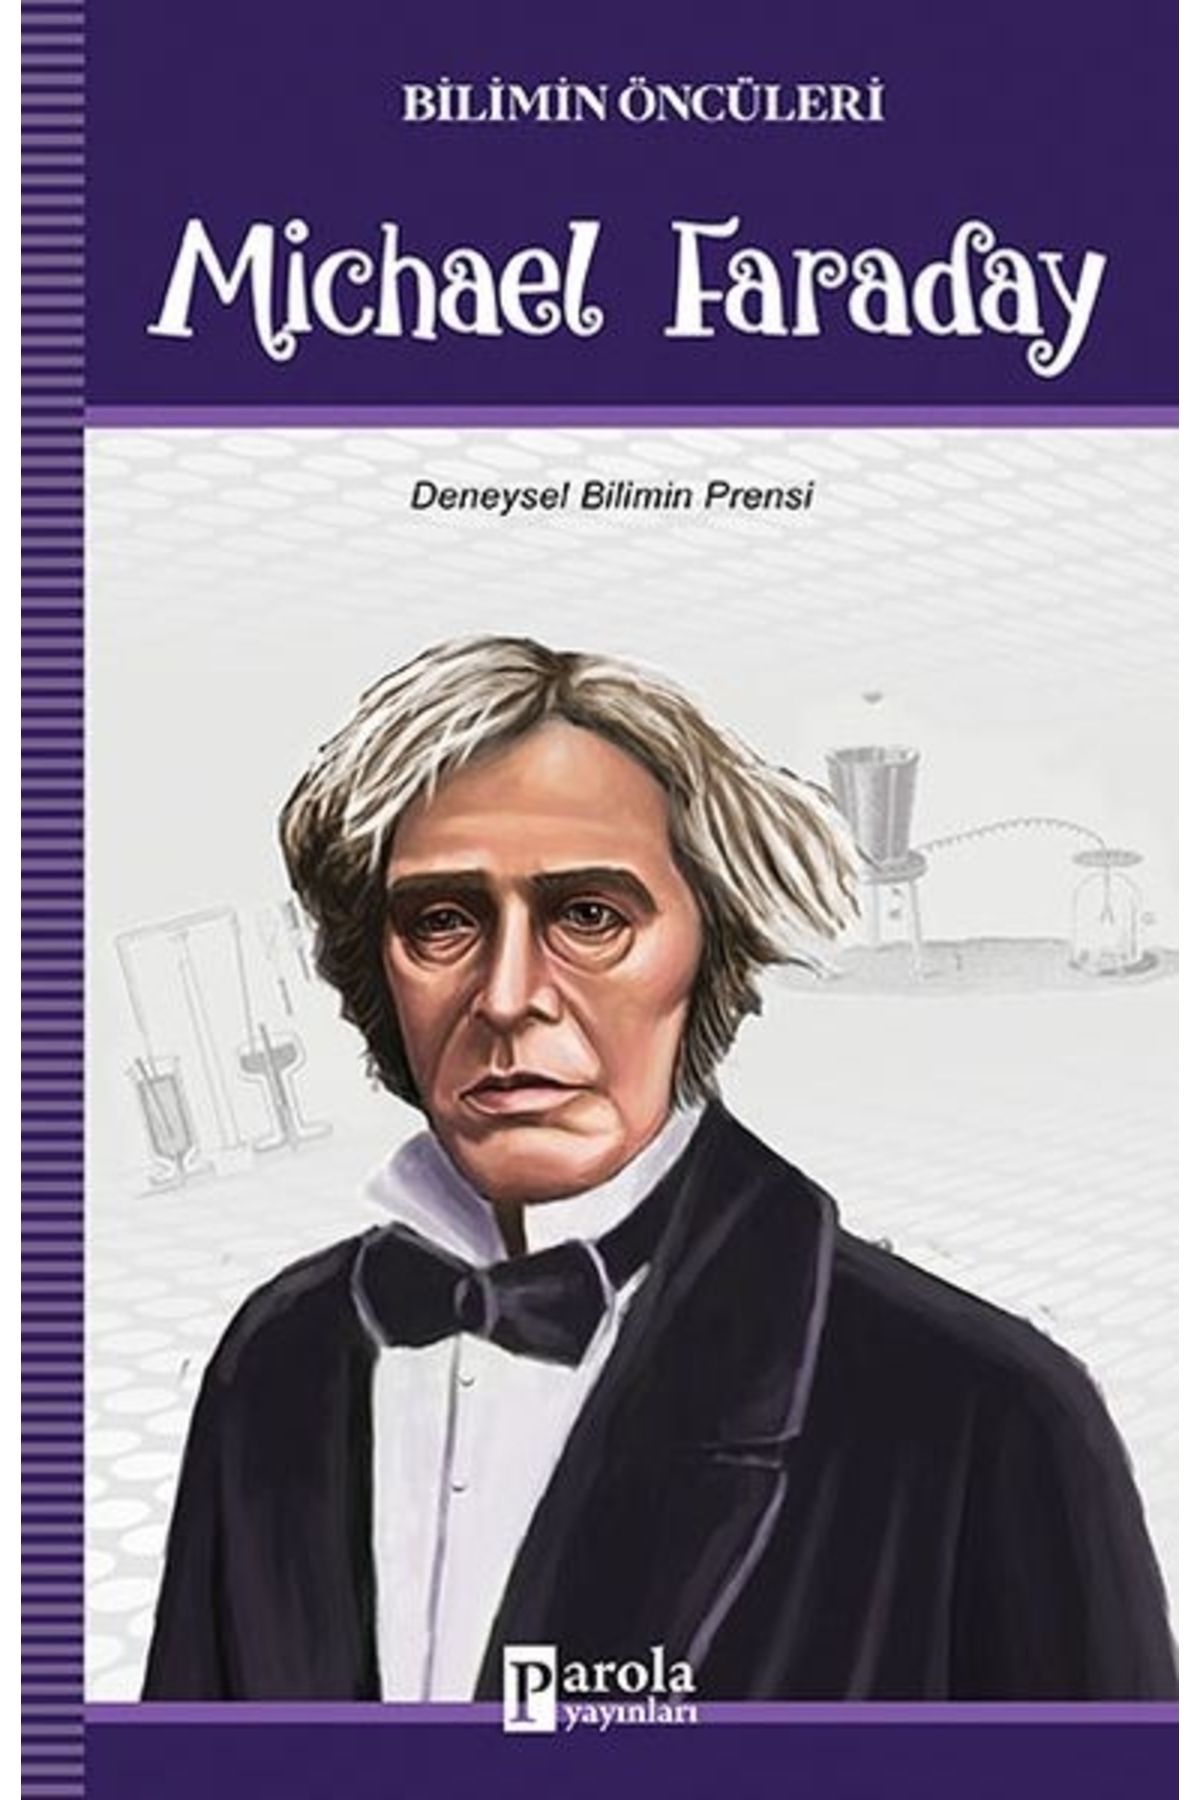 Parola Yayınları Bilimin Öncüleri - Michael Faraday - Deneysel Bilimin Prensi